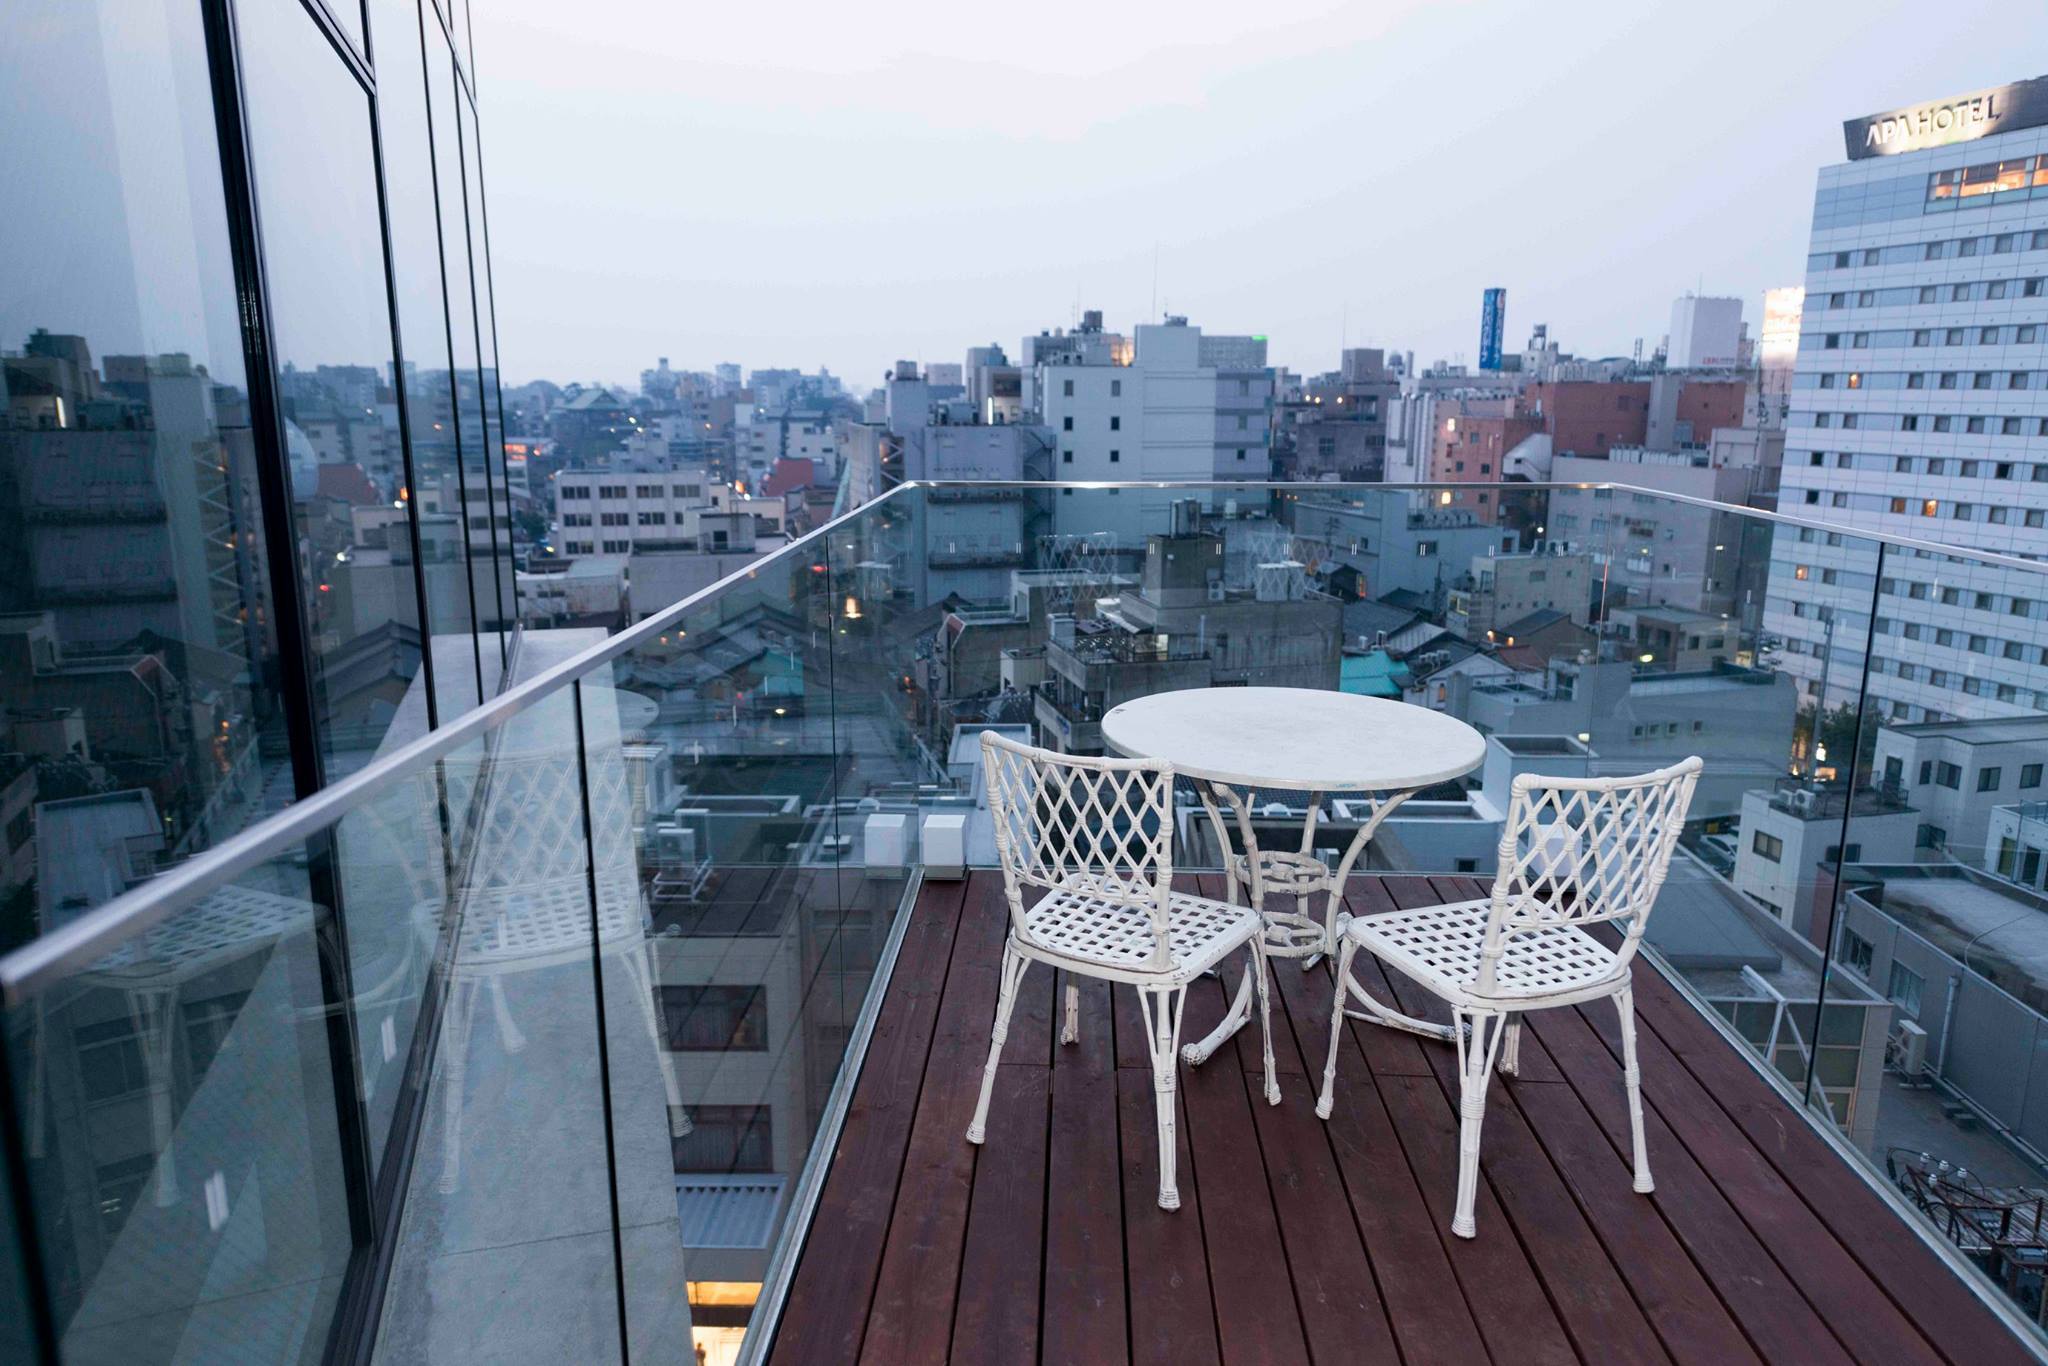 فنادق يابانية تقدم إقامة مجانية للسياح الأجانب العالقين في اليابان بسبب كورونا